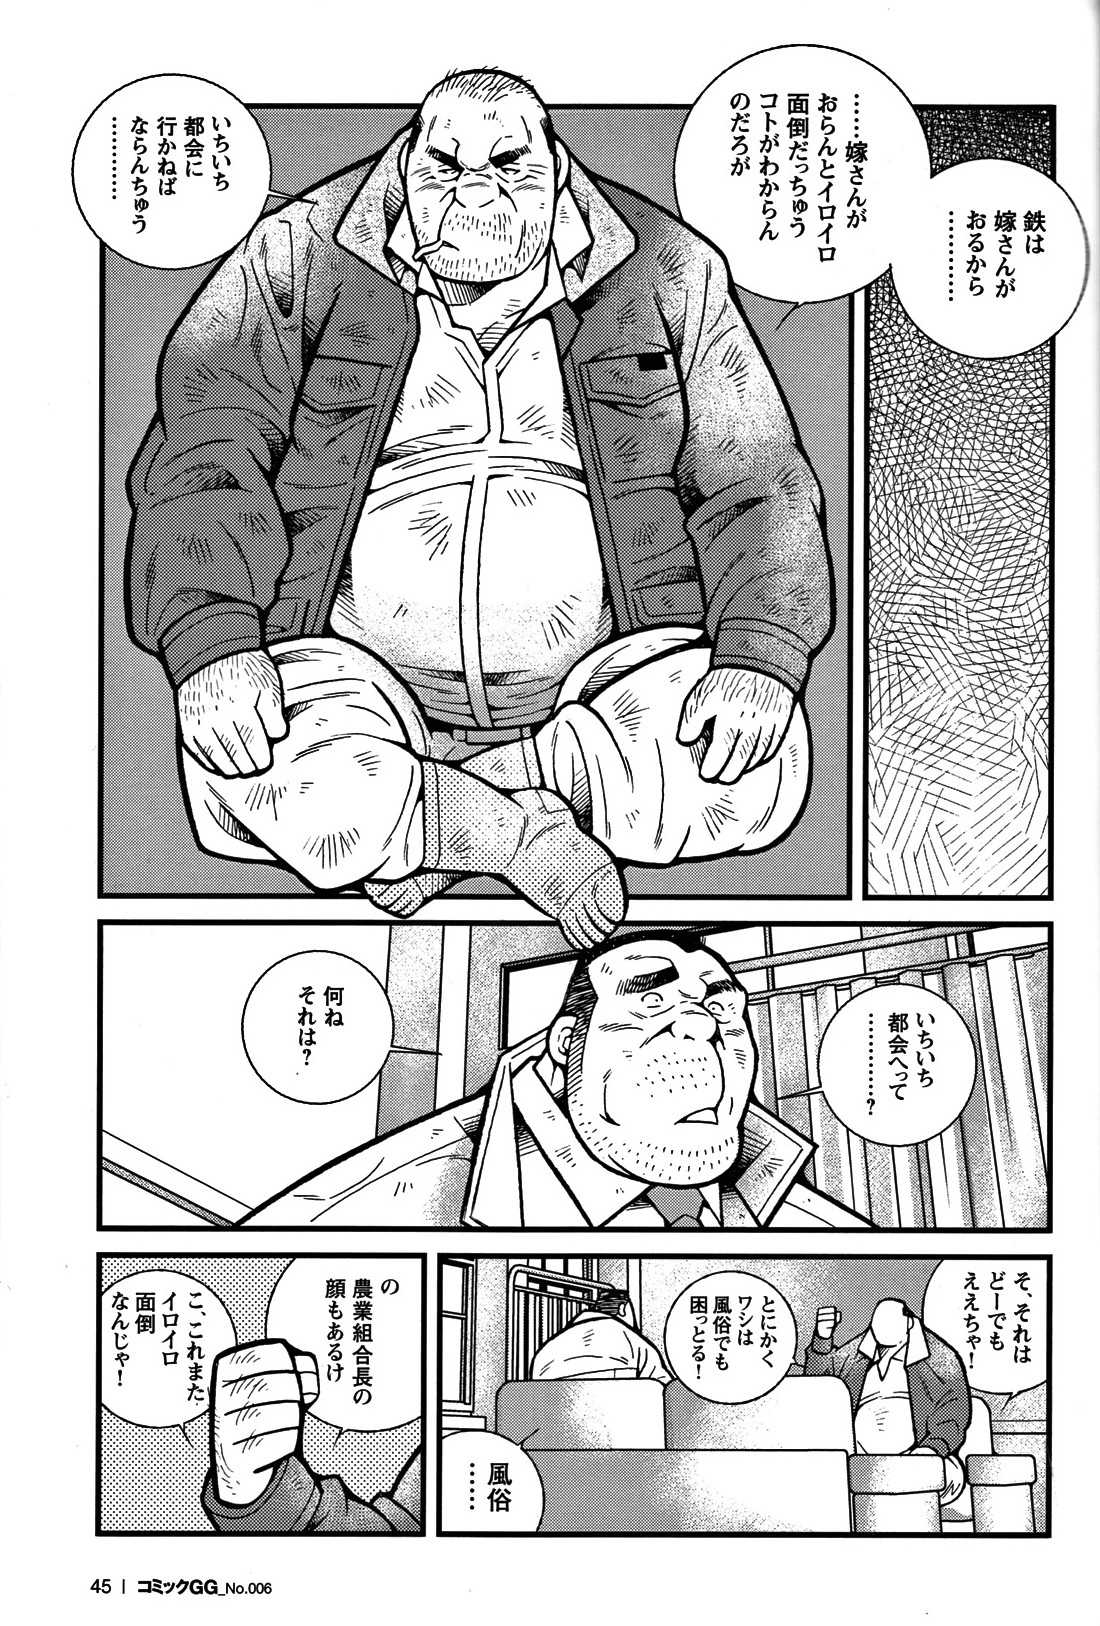 Comic G-men Gaho No. 06 Nikutai Roudousha page 40 full